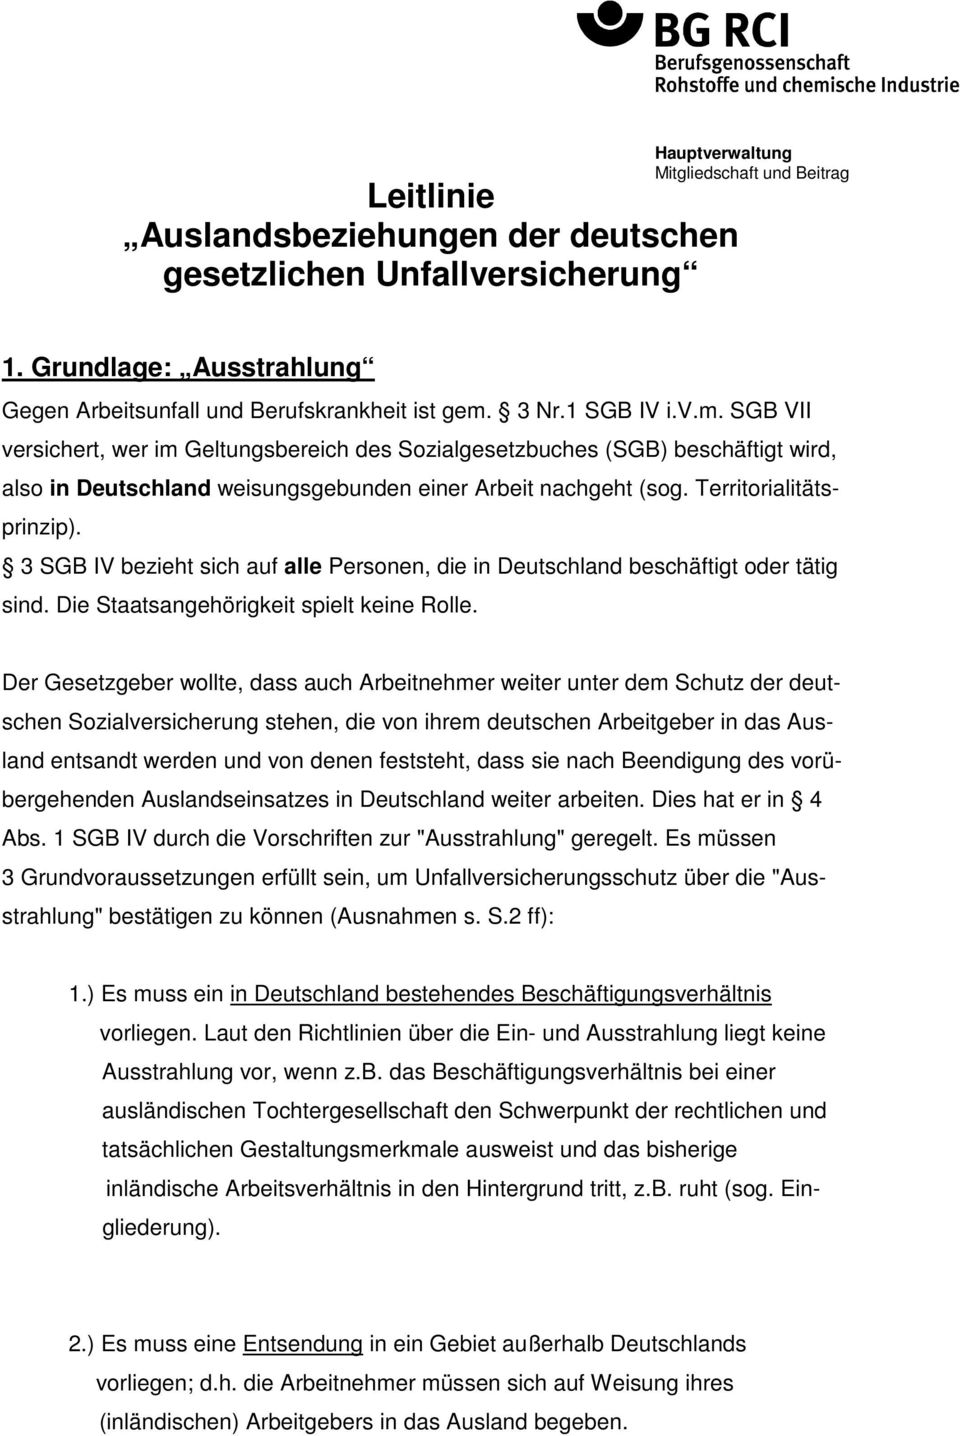 3 SGB IV bezieht sich auf alle Personen, die in Deutschland beschäftigt oder tätig sind. Die Staatsangehörigkeit spielt keine Rolle.